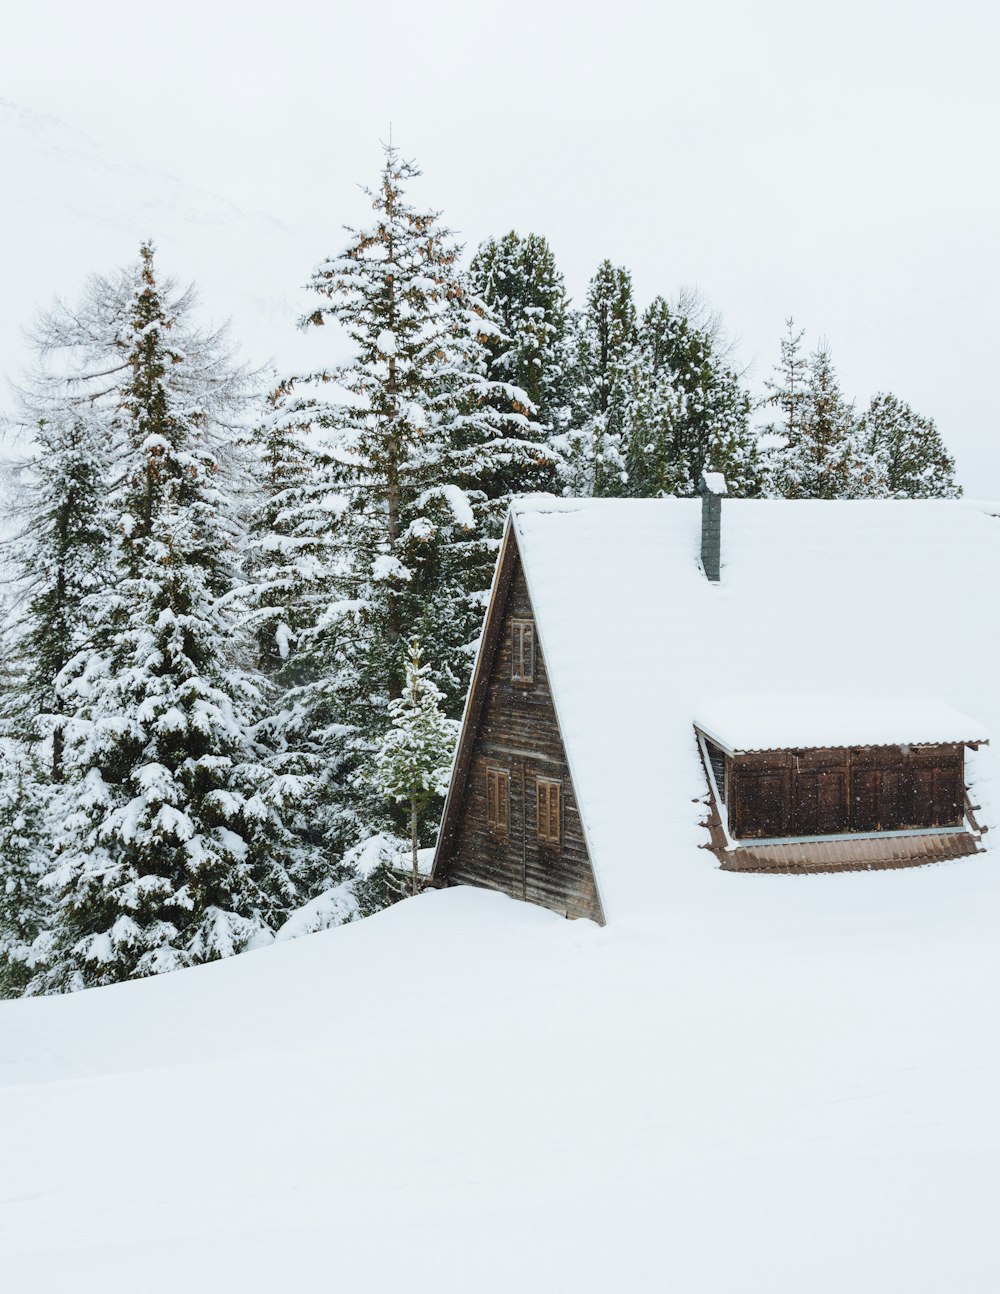 cabana marrom coberta de neve ao lado de árvores durante o dia